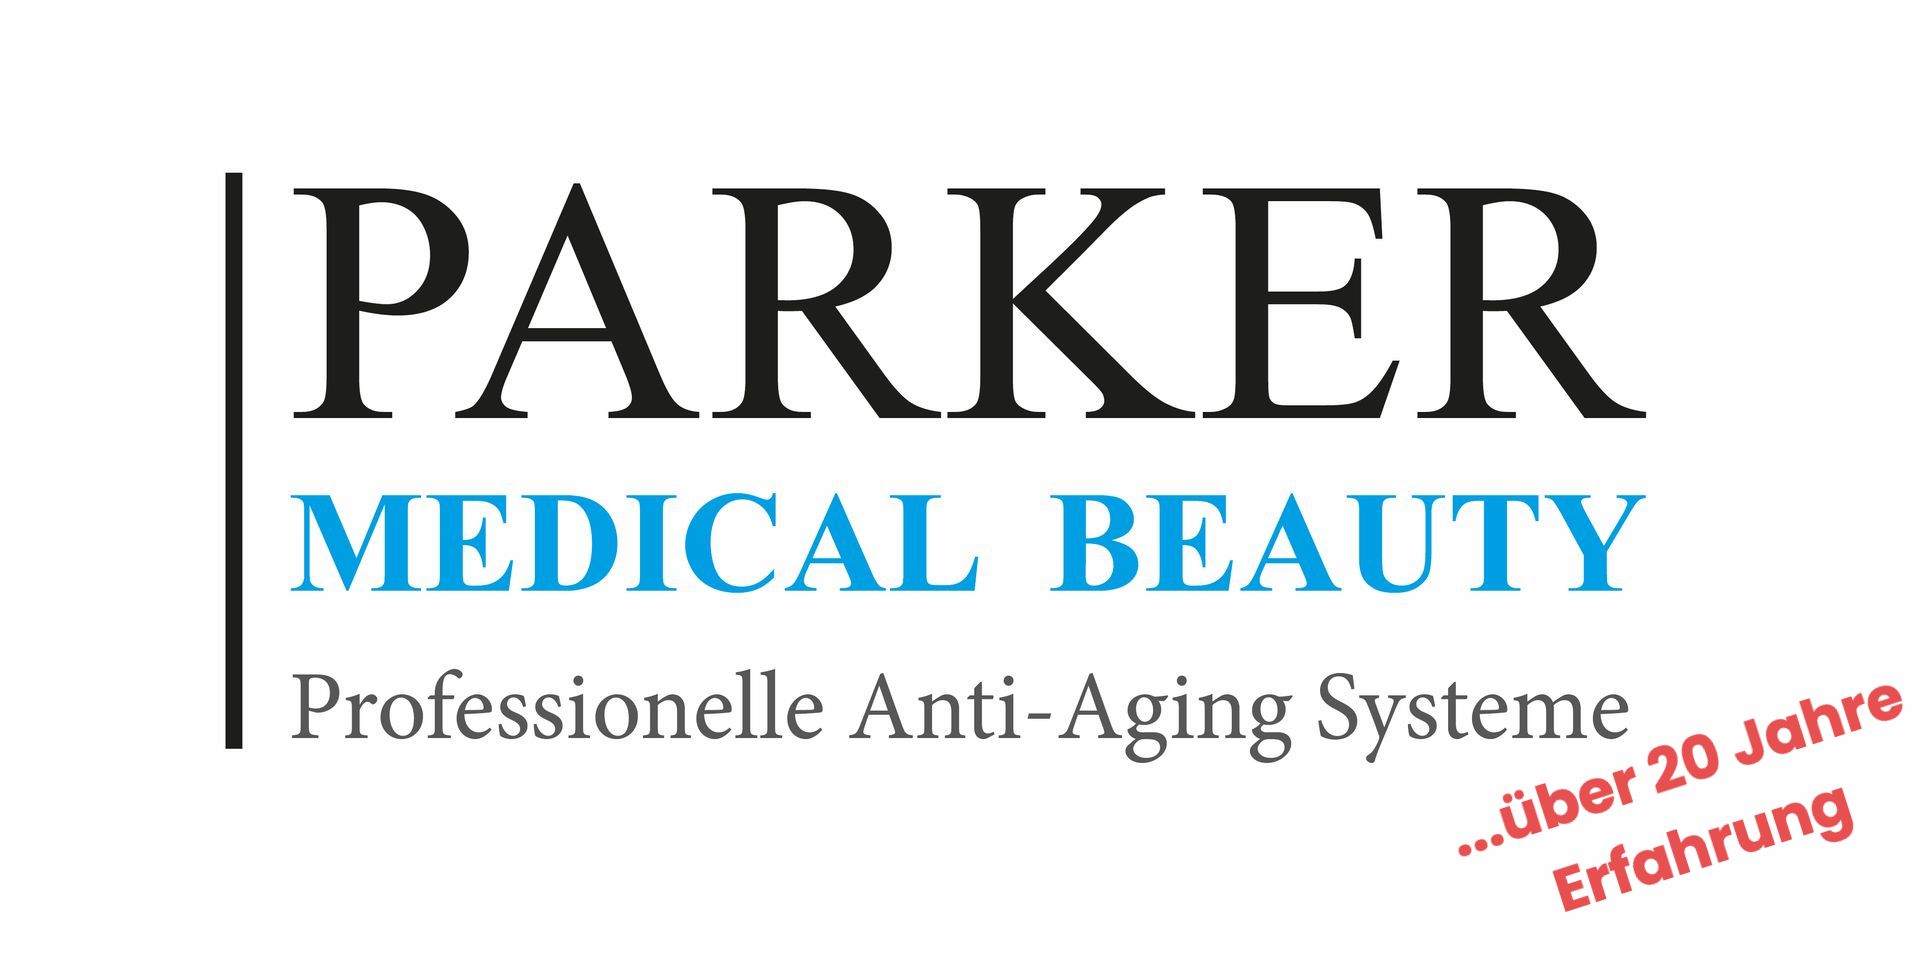 Das Logo für die professionellen Anti-Aging-Systeme von Parker Medical Beauty